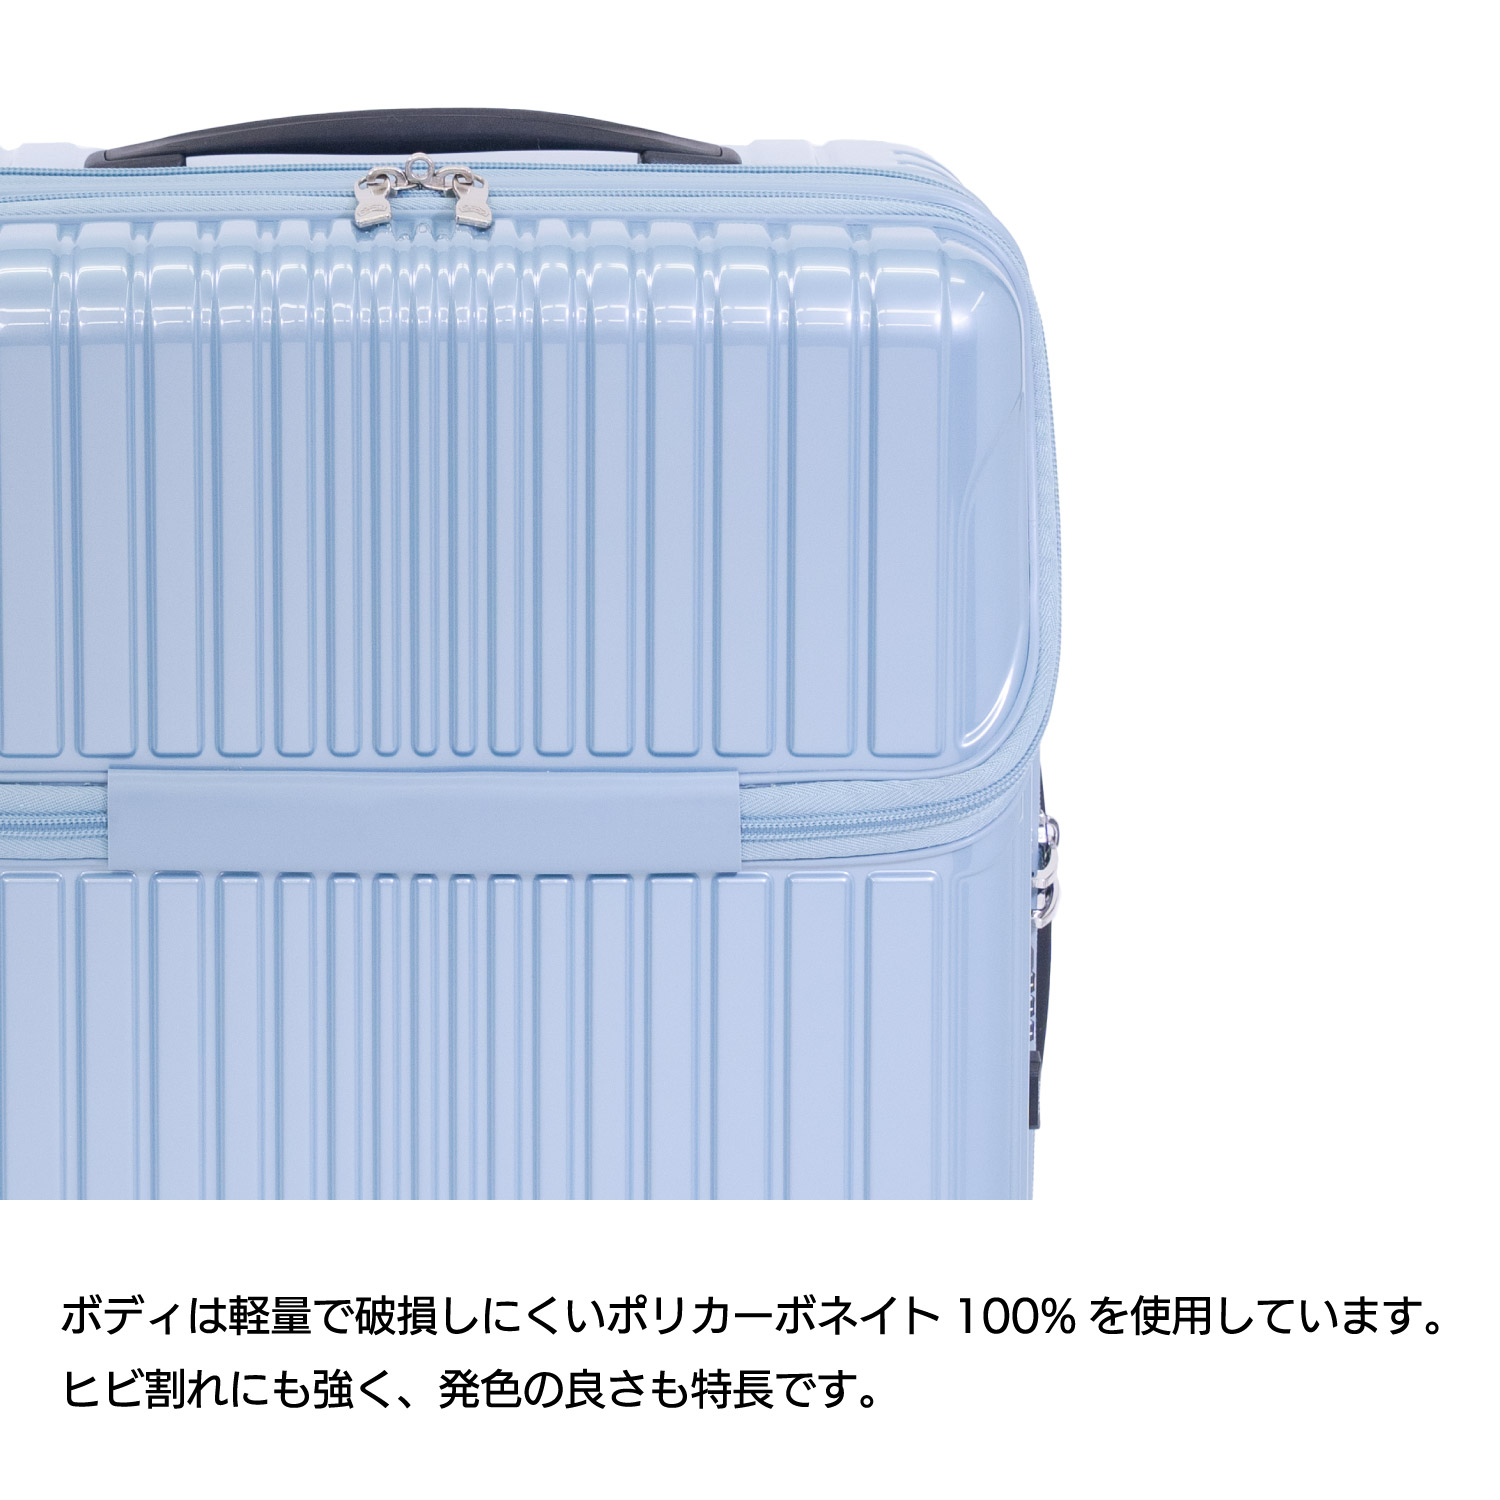 [ワイズリー] スーツケース 超軽量 ショック吸収・ストッパー機能双輪キャスター 抗菌防臭 TSAロック マチ拡張 約52〜58L cm ブラウン - 3